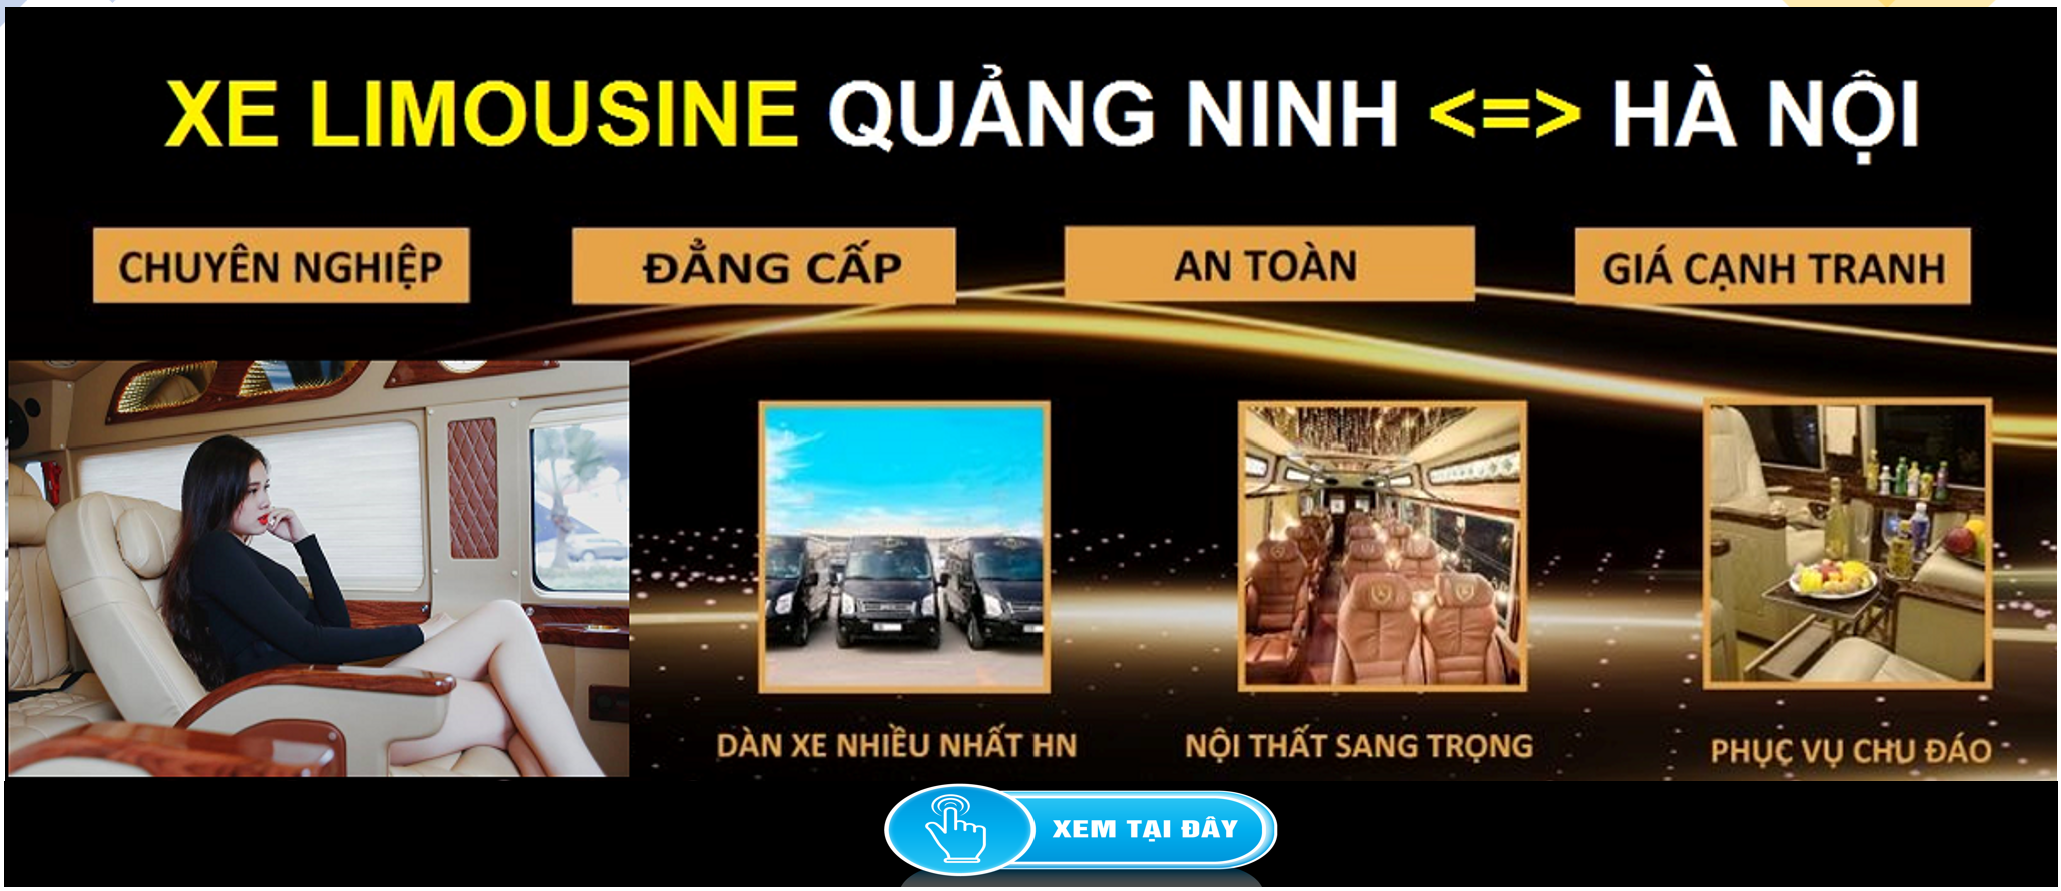 Xe Limousine Ha Noi Quang Ninh dua don tai nha 1d - Hướng dẫn ghi tờ khai lệ phí trước bạ nhà, đất